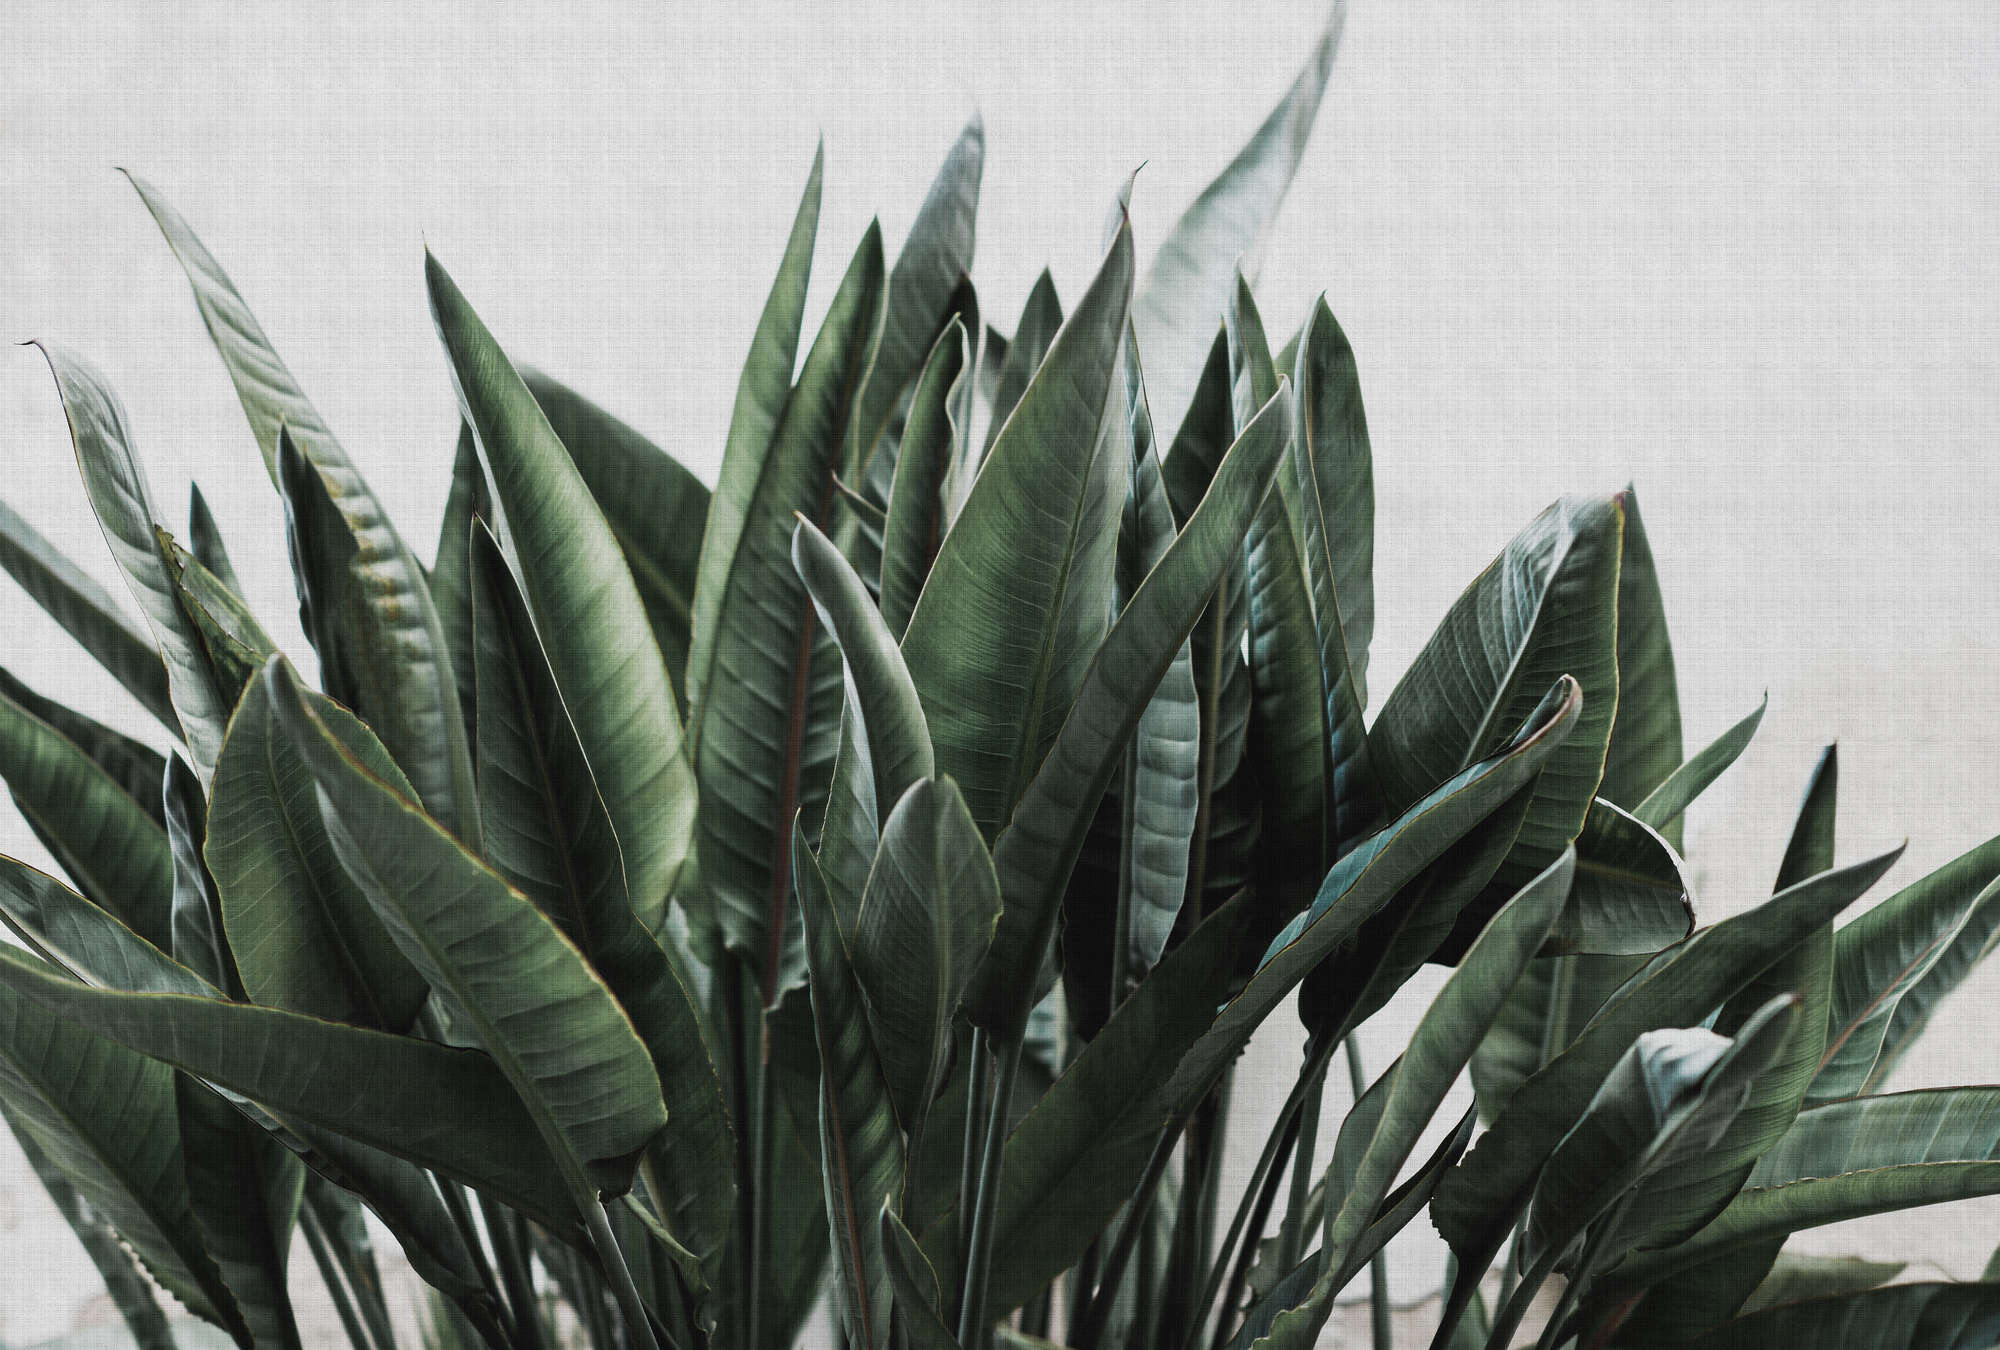             Jungla urbana 2 - Papel pintado Hojas de palmera, estructura de lino natural plantas exóticas - Gris, Verde | Liso mate
        